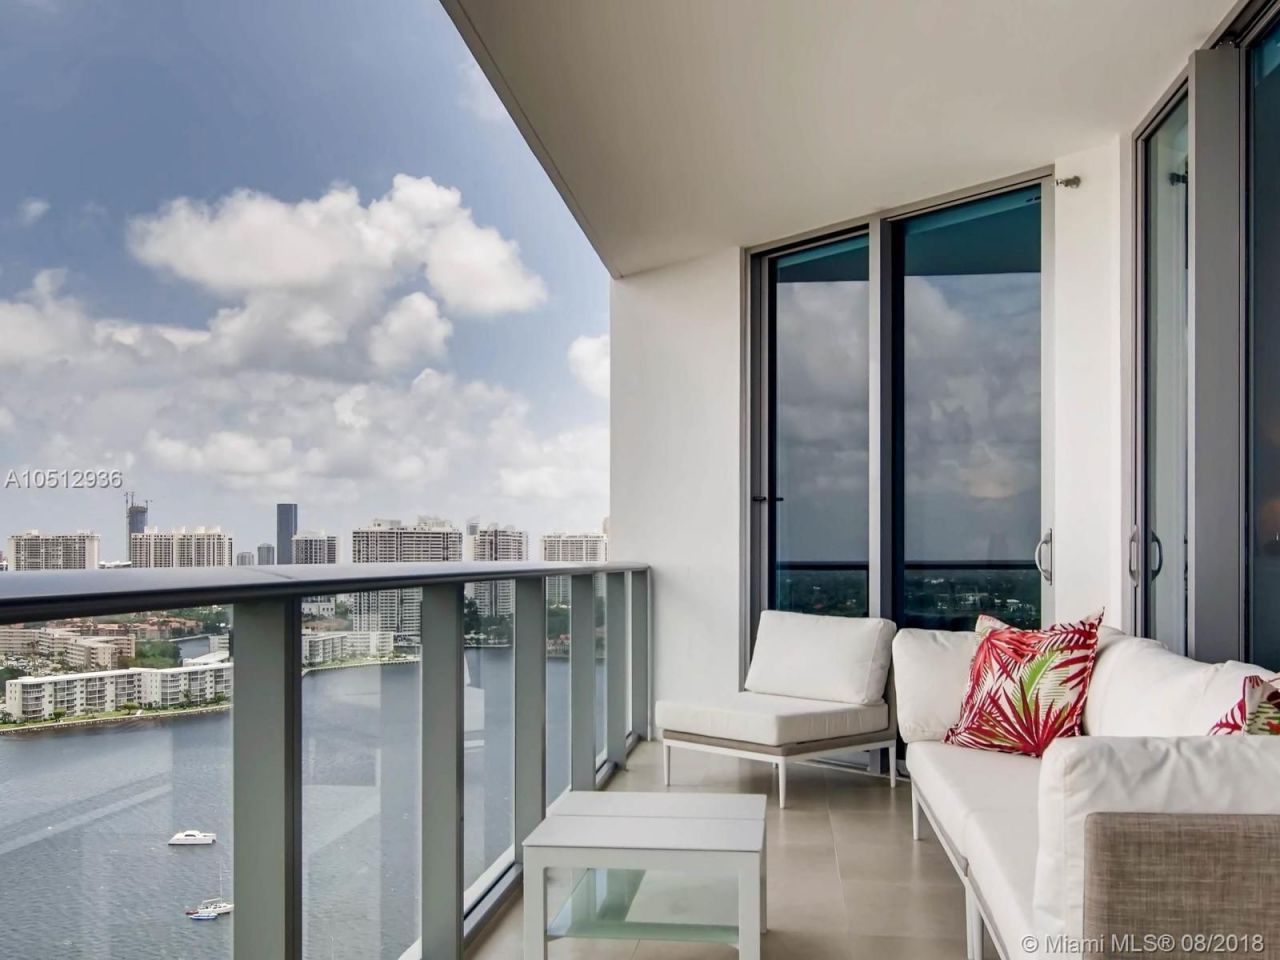 Апартаменты в Майами, США, 220 м2 фото 3